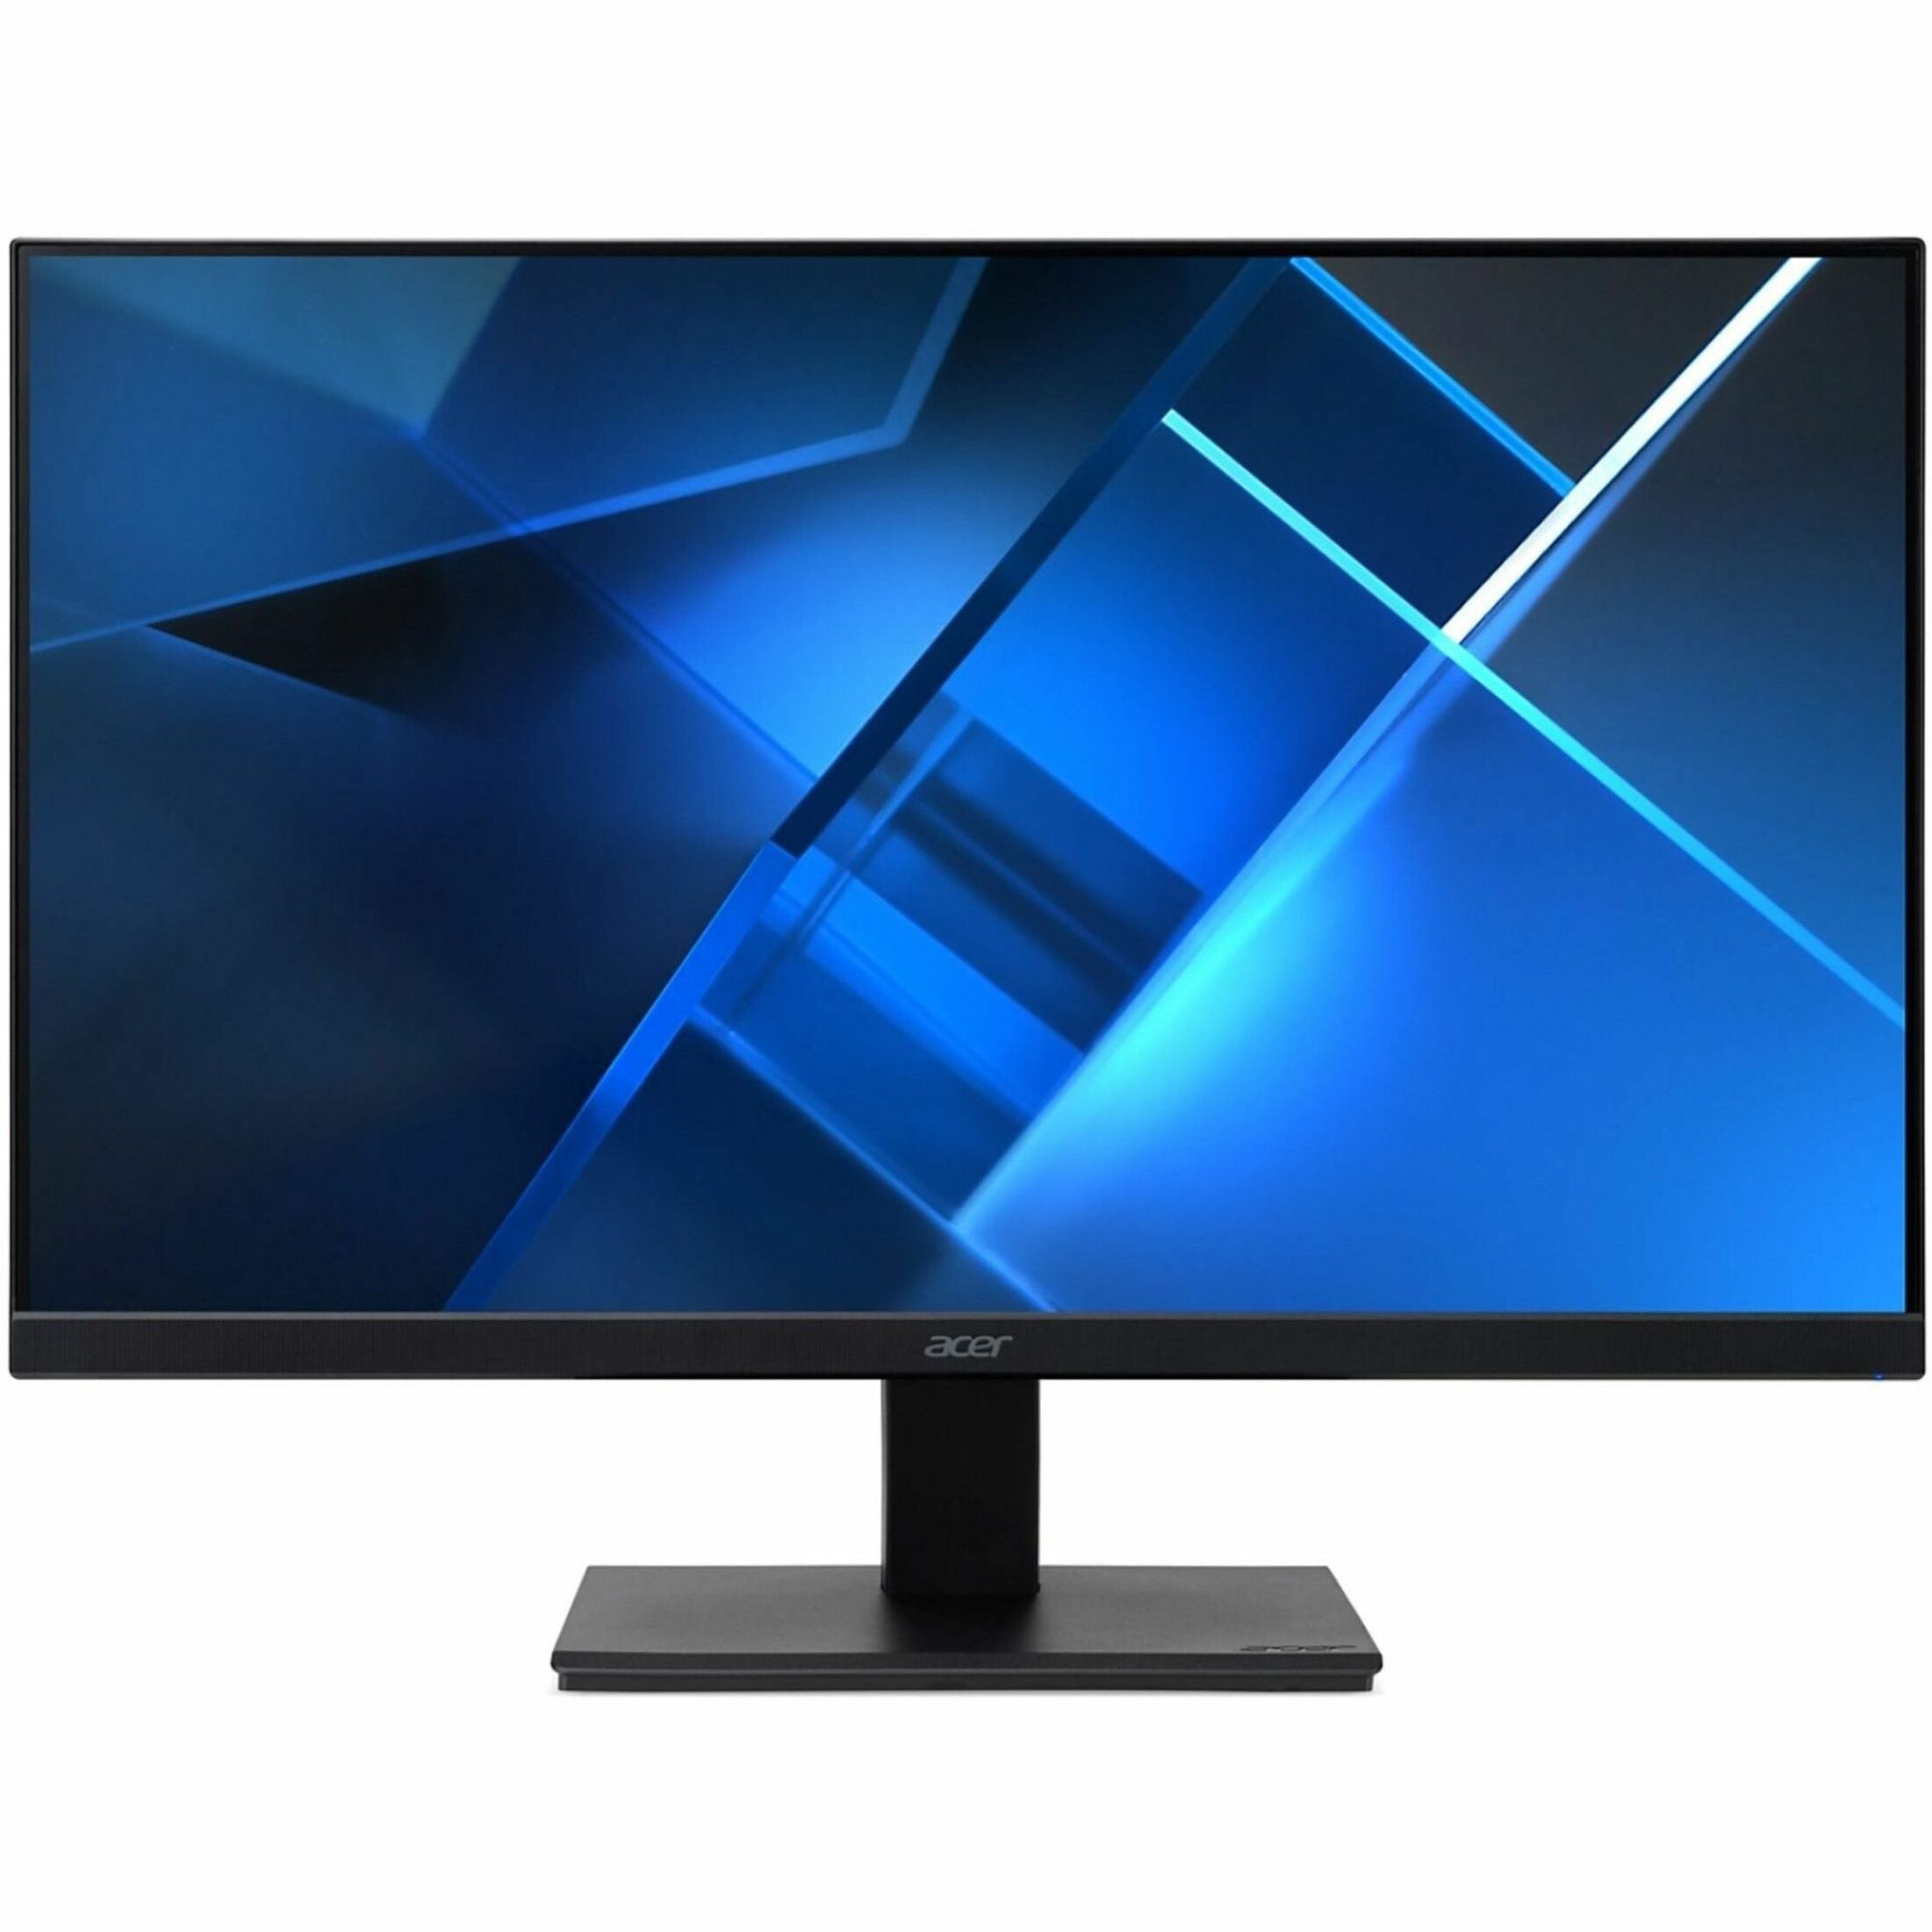 Acer UM.HV7AA.009 V277 27 Full HD LCD Monitor, 16:9, Black